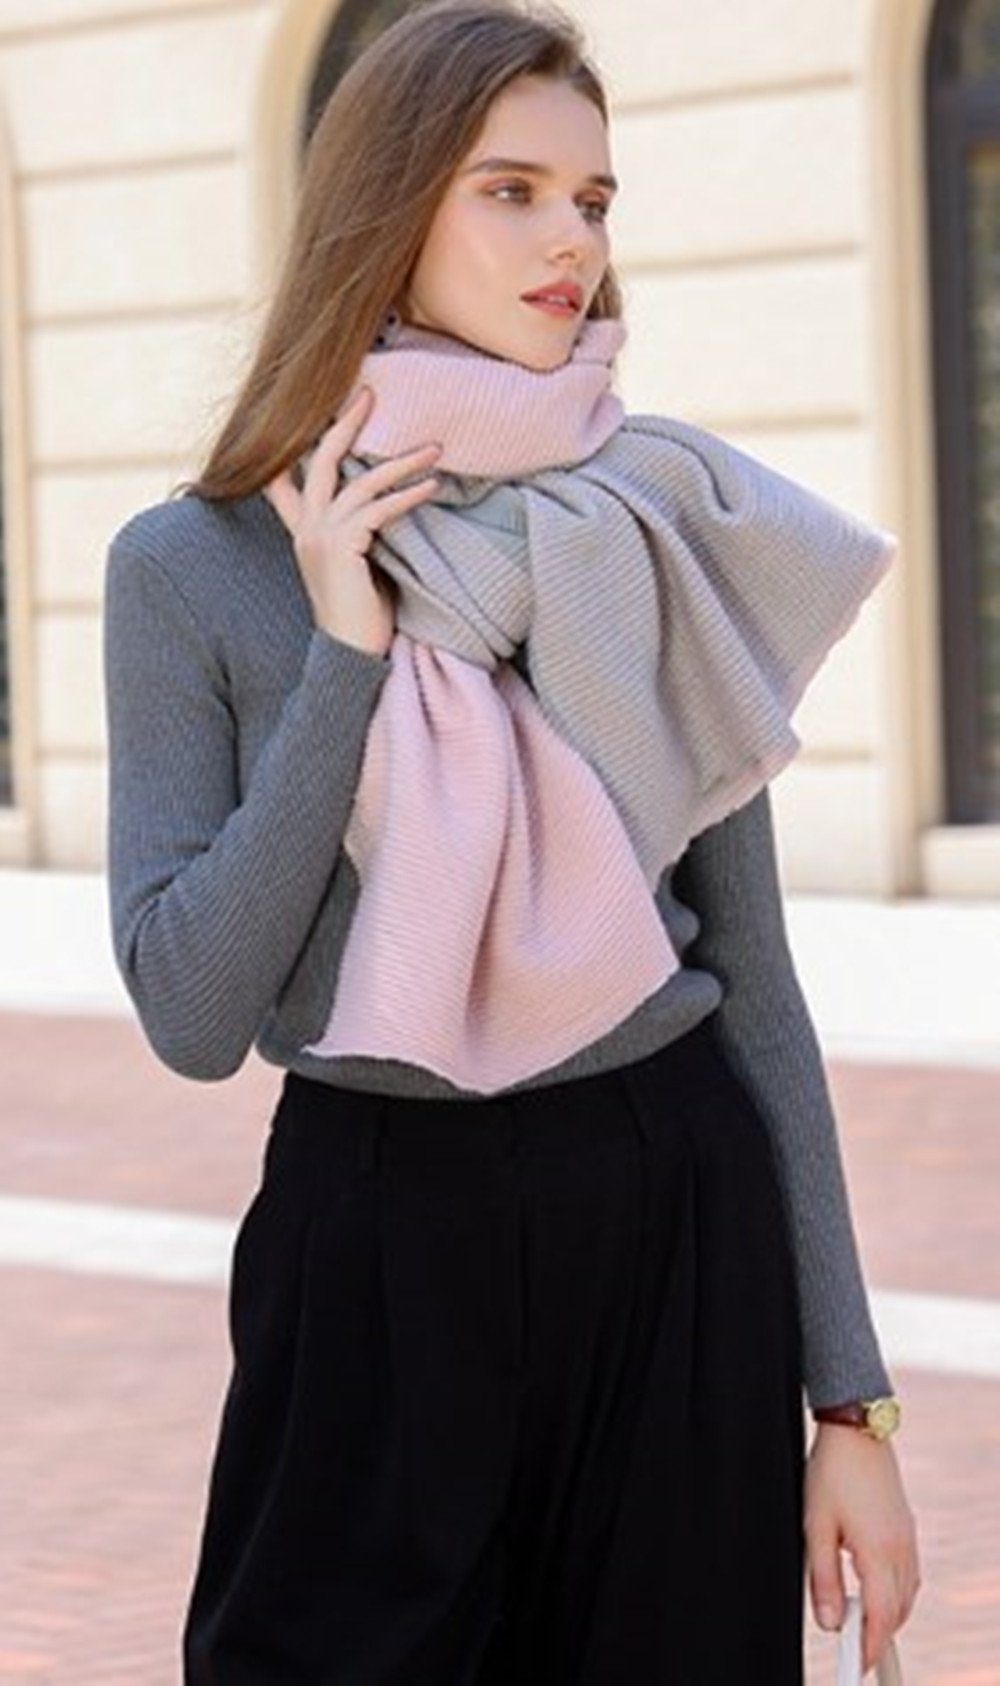 XDeer Modeschal Damen Halstuch in Schal Poncho feine Farben Winter Linie,Damen pink Geschenk verschiedenen zweiseitige für Frauen Qualität, Schal,XL